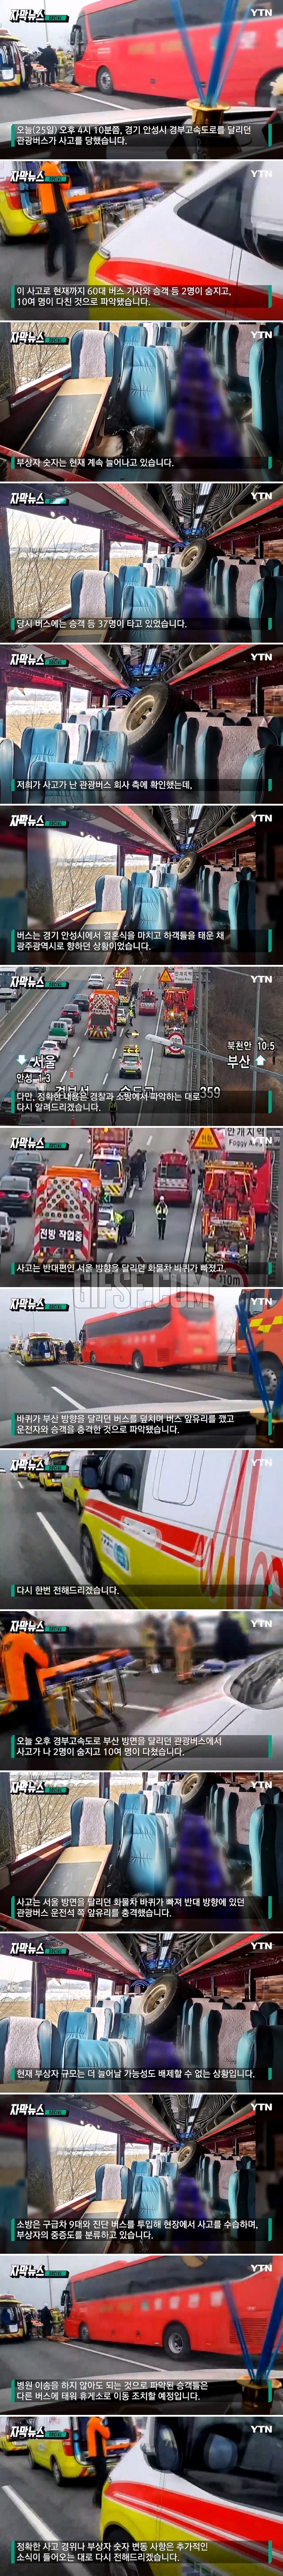 트럭 바퀴, 달리던 버스로 날아와.2명 사망·10여 명 부상.jpg